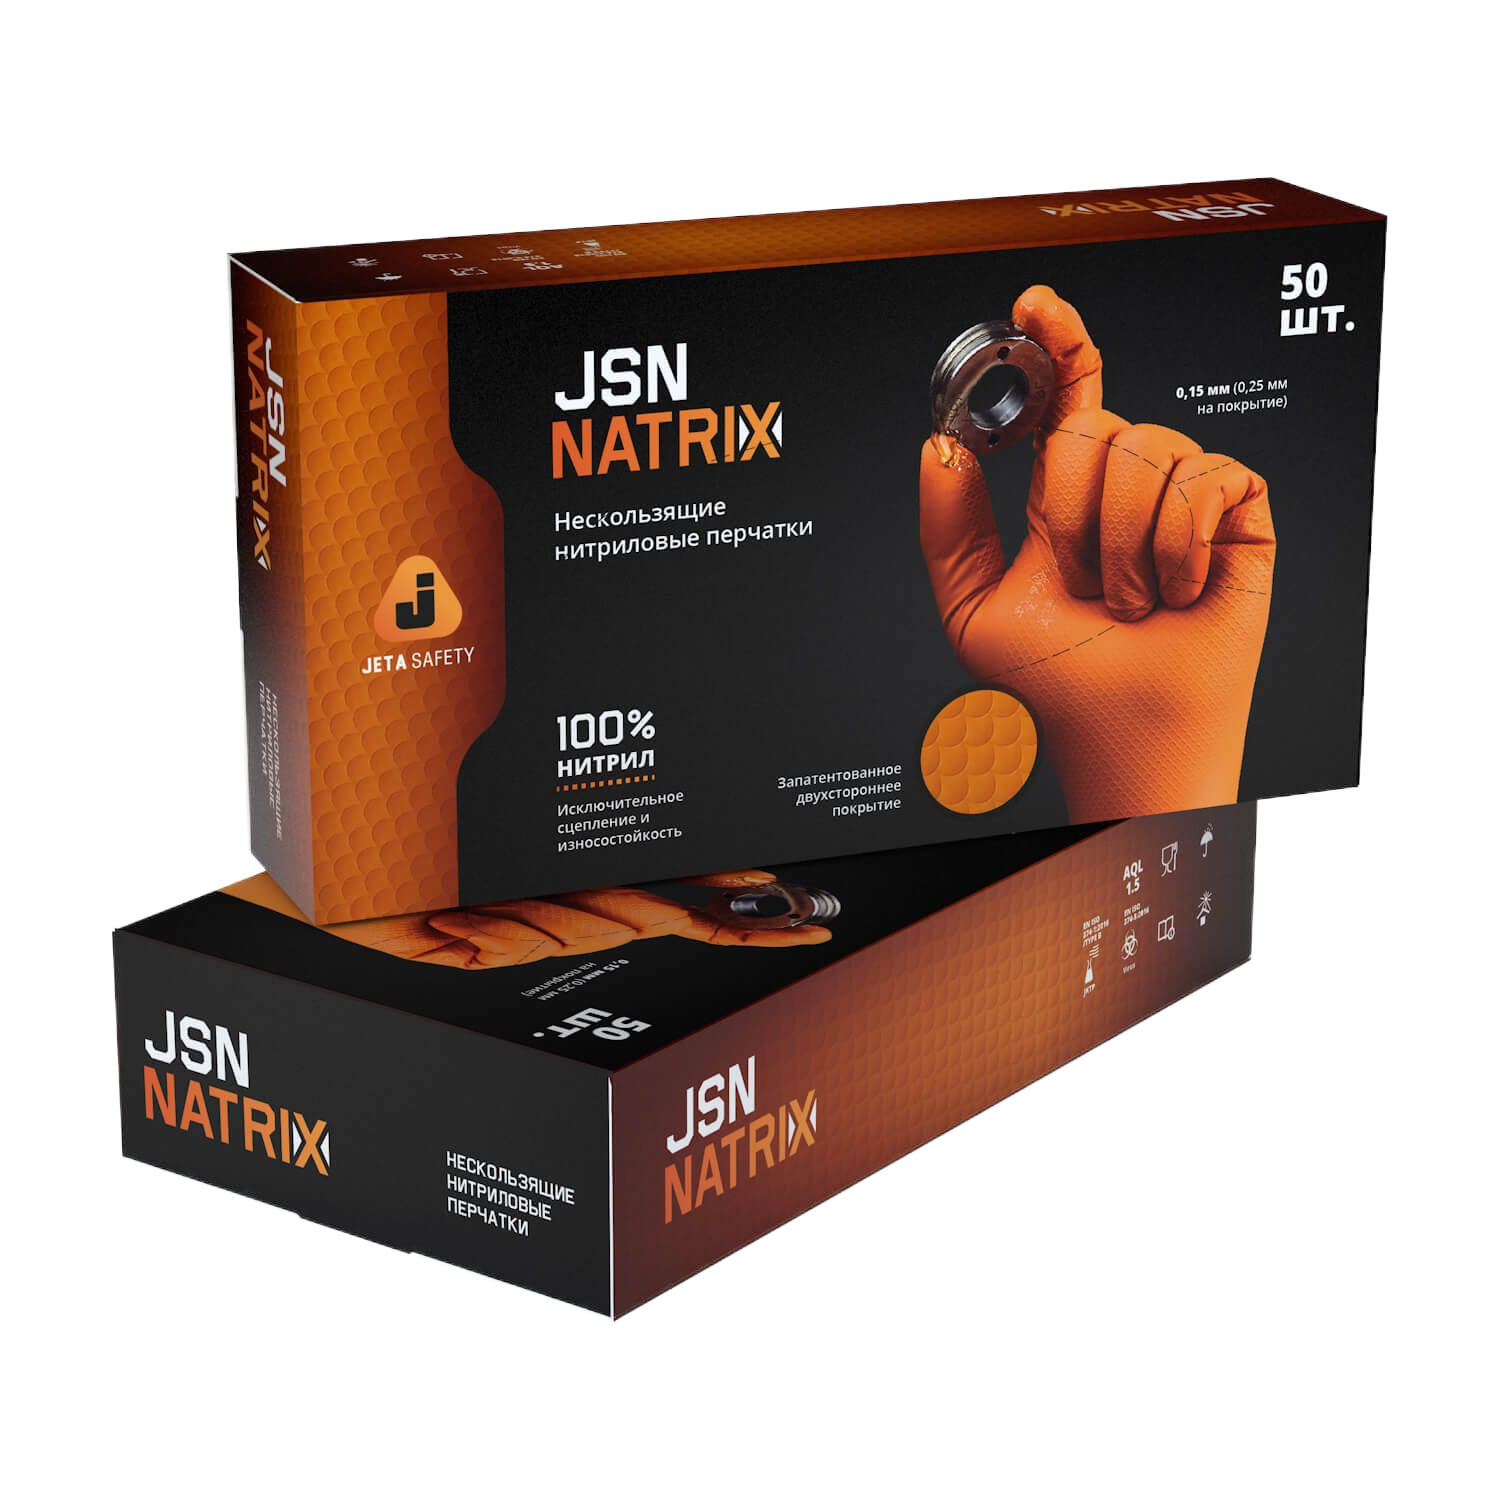 JSN 50 NATRIX OR09/L Перчатки нескользящие одноразовые JETA Safety оранжевые нитриловые размер L. Цена за 1 шт